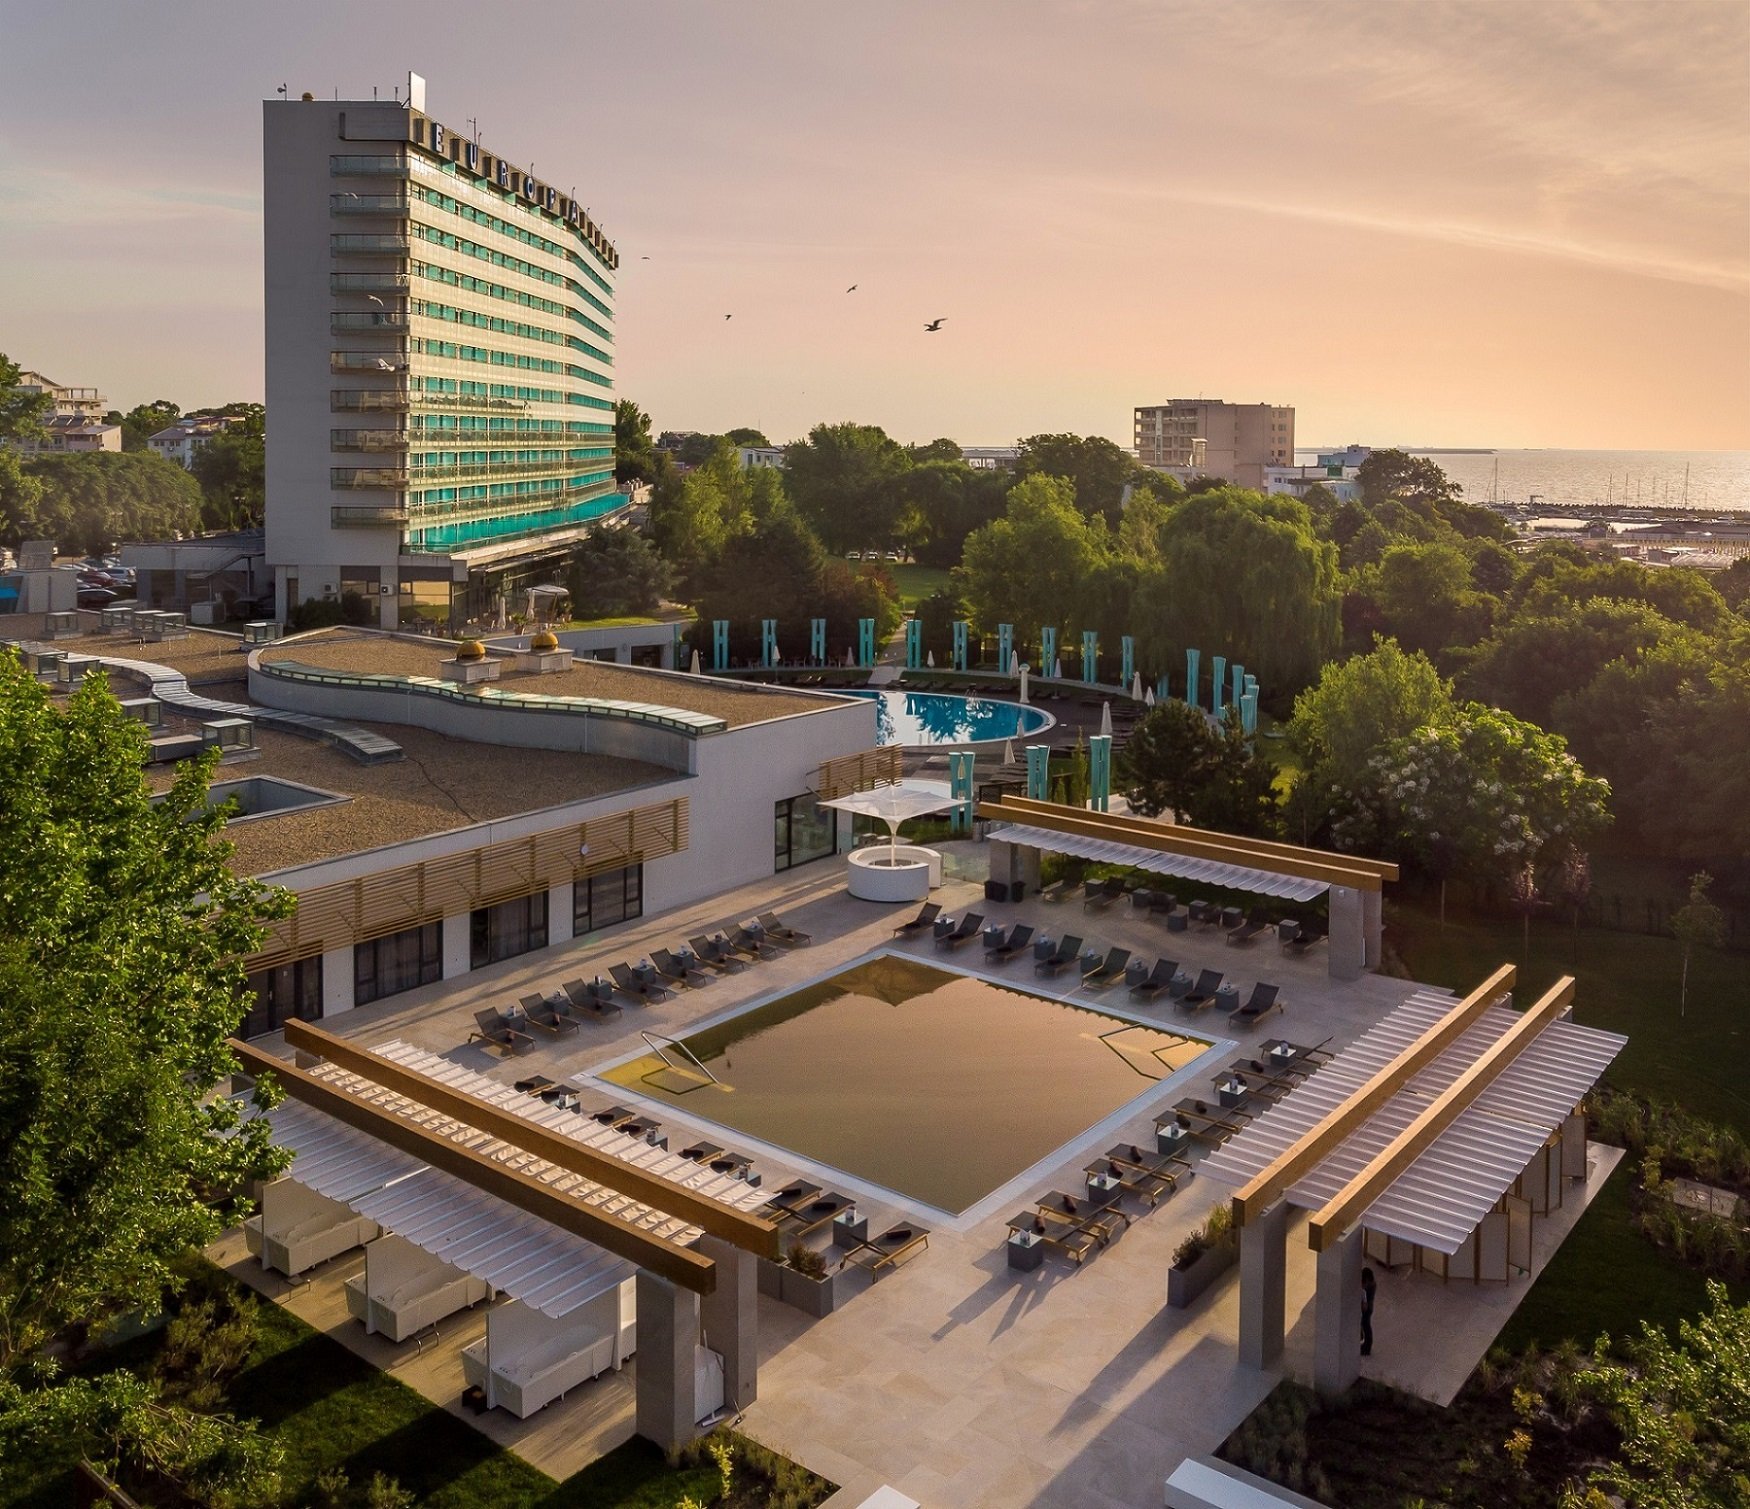 Ana Hotels deschide hotelul Europa din Eforie Nord pe 28 aprilie